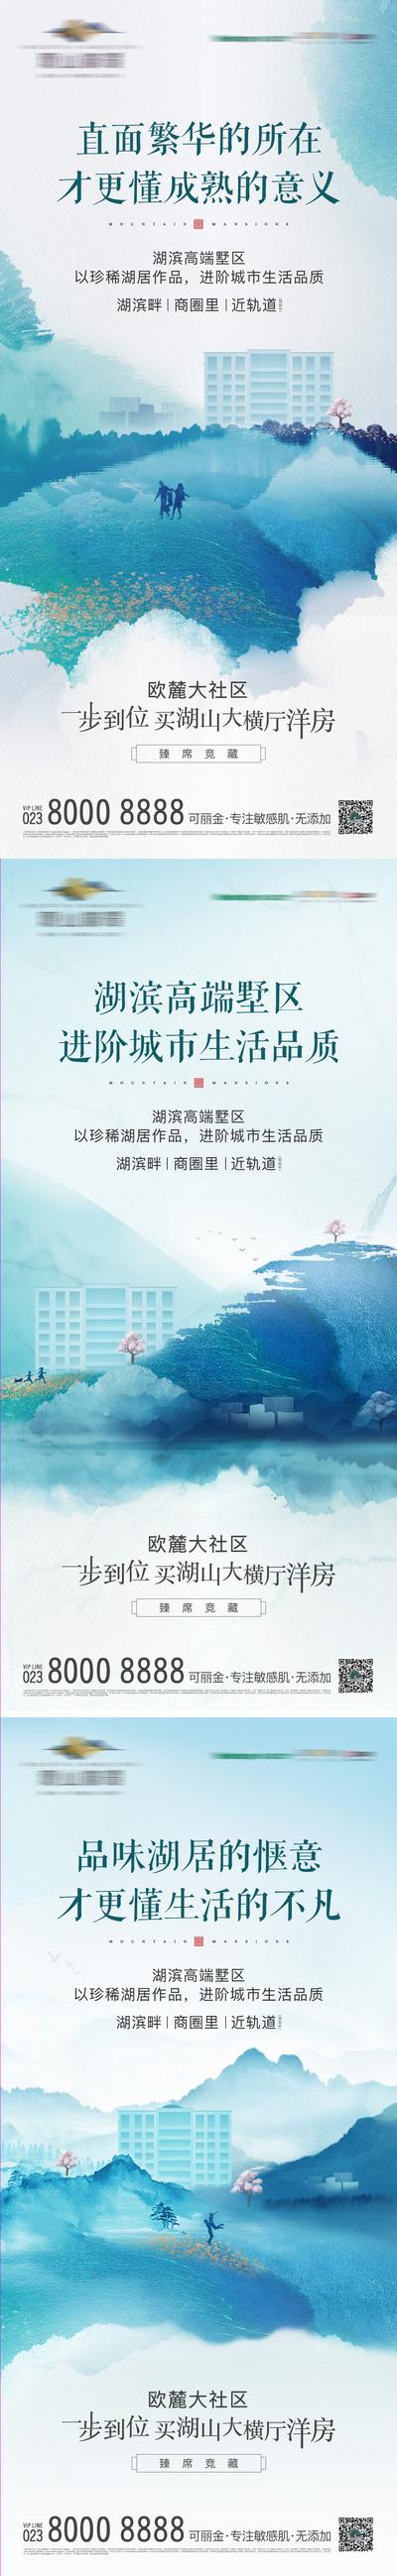 南门网 地产湖景价值点海报系列